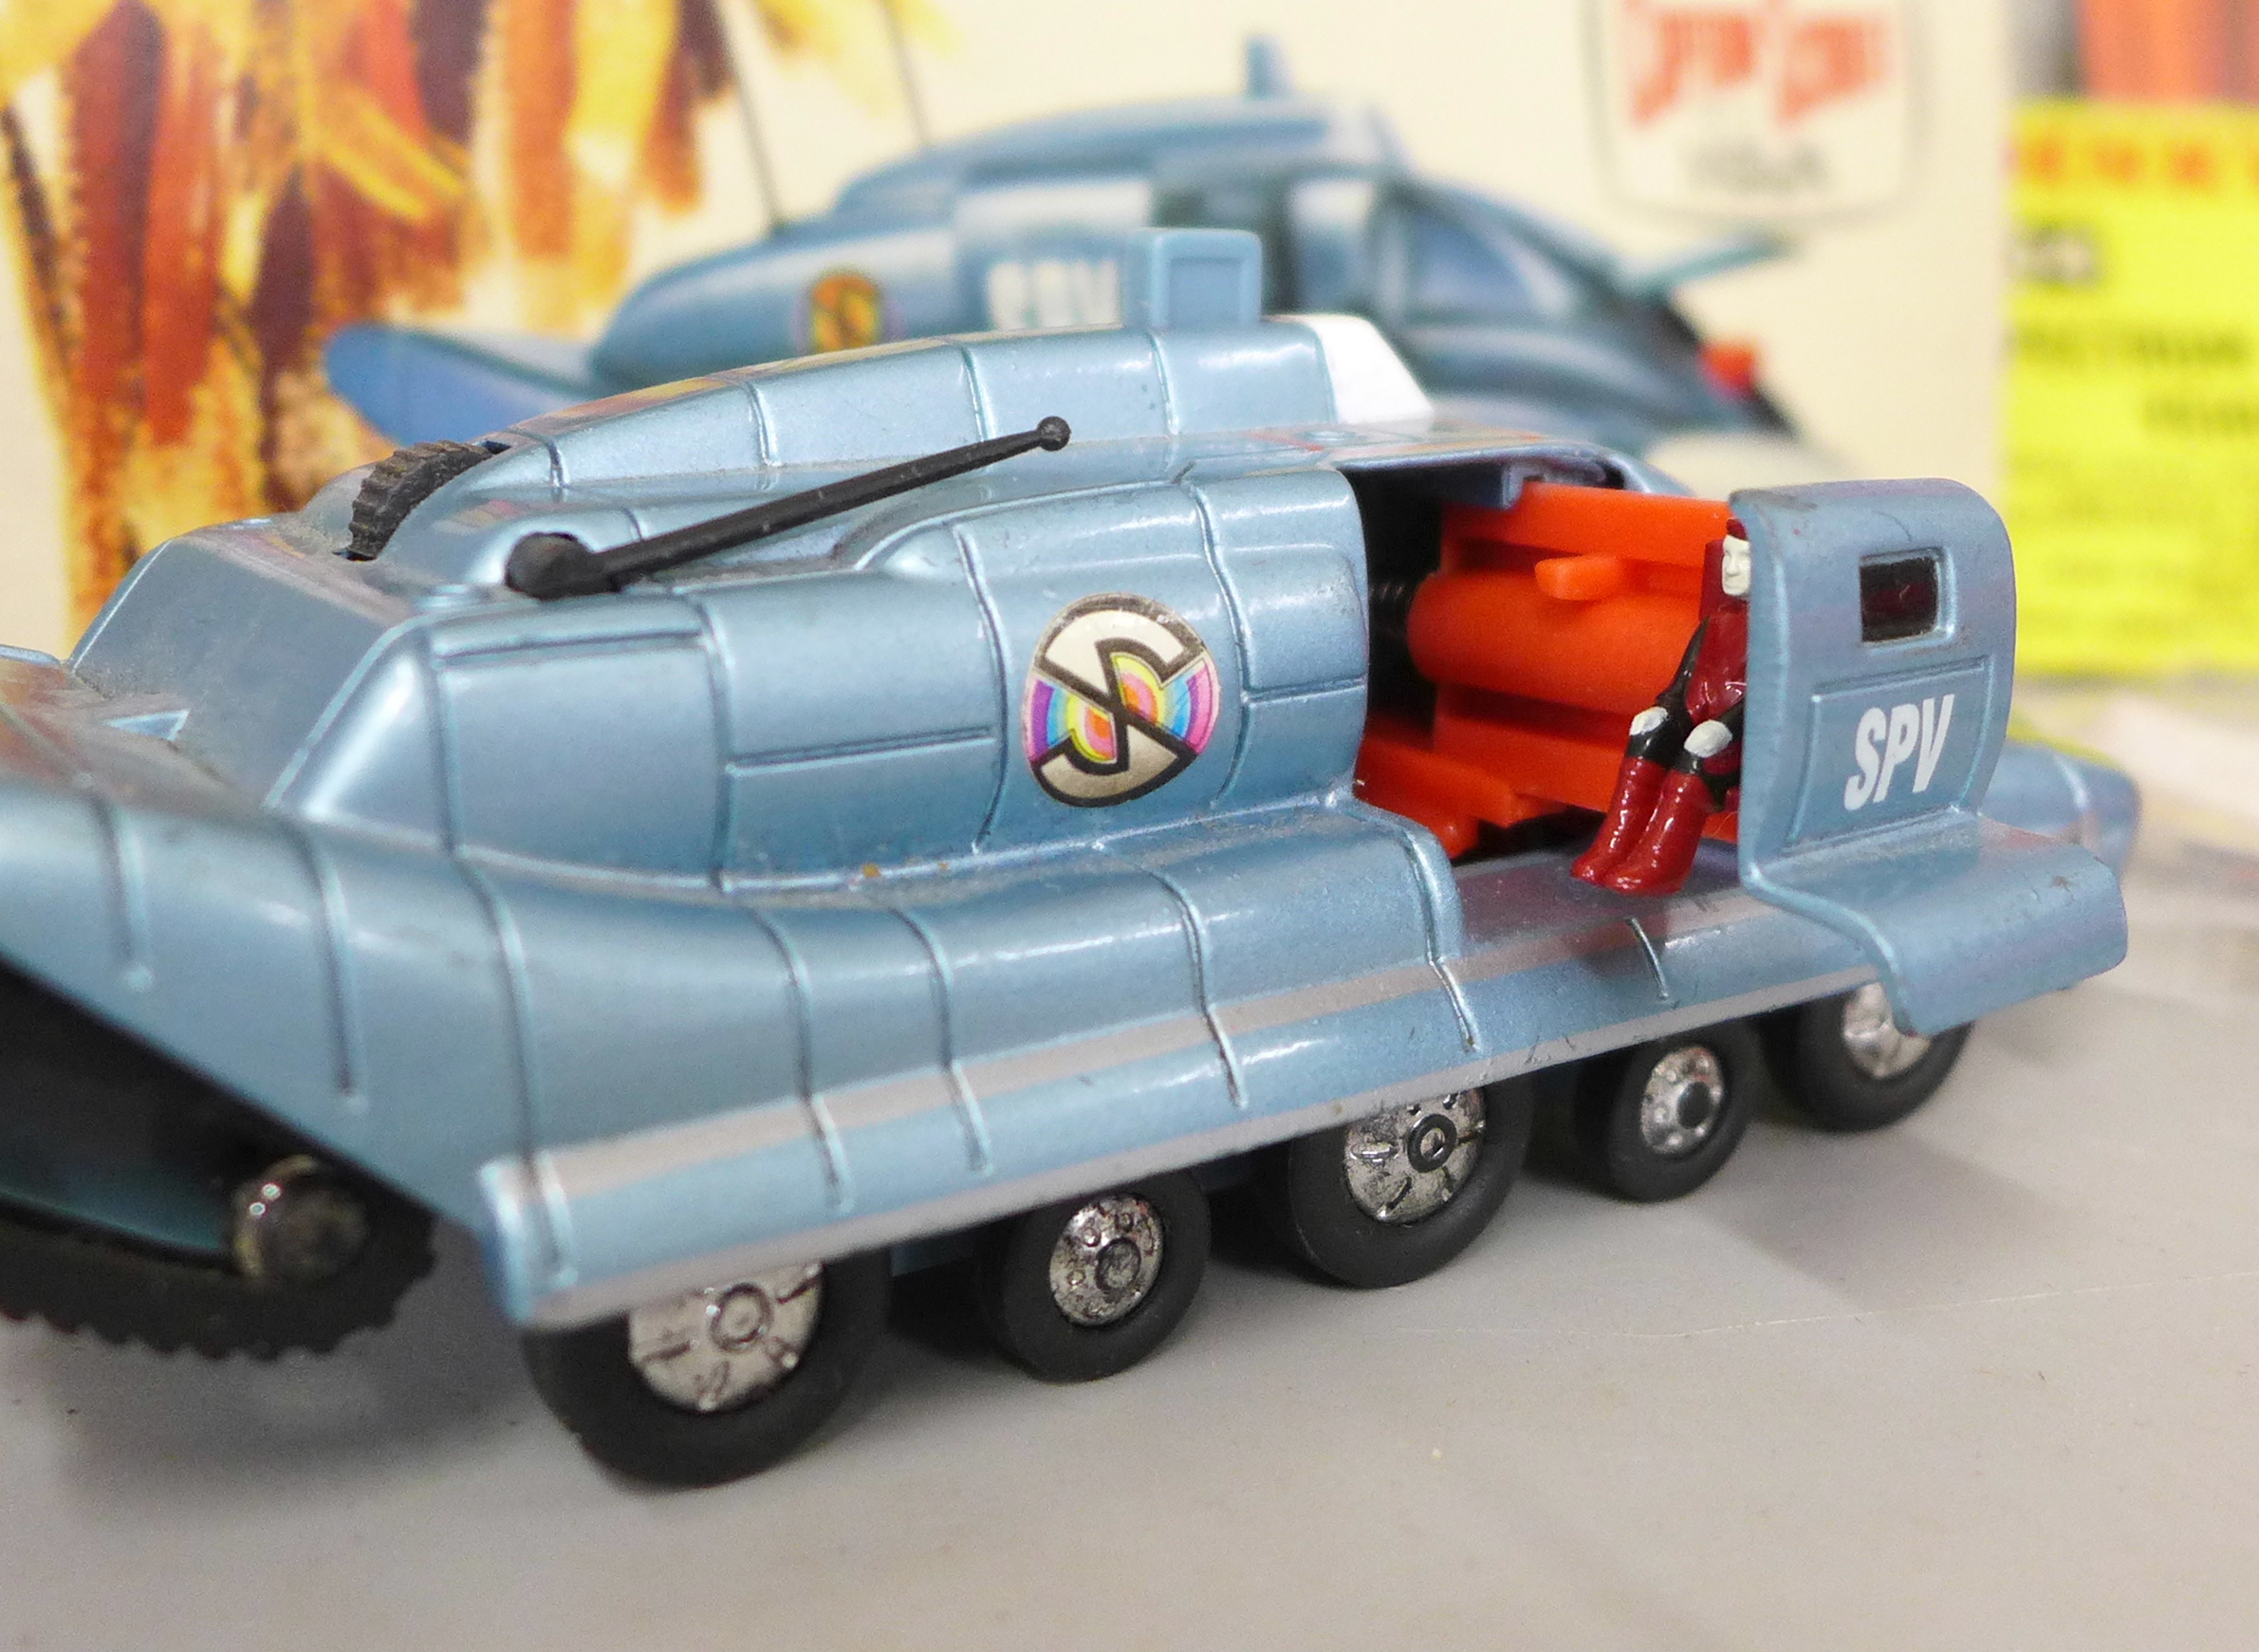 A die-cast Schuco Racer 1036/1, Dinky Toys Captain Scarlet Spectrum Pursuit Vehicle, box a/f, - Image 7 of 7